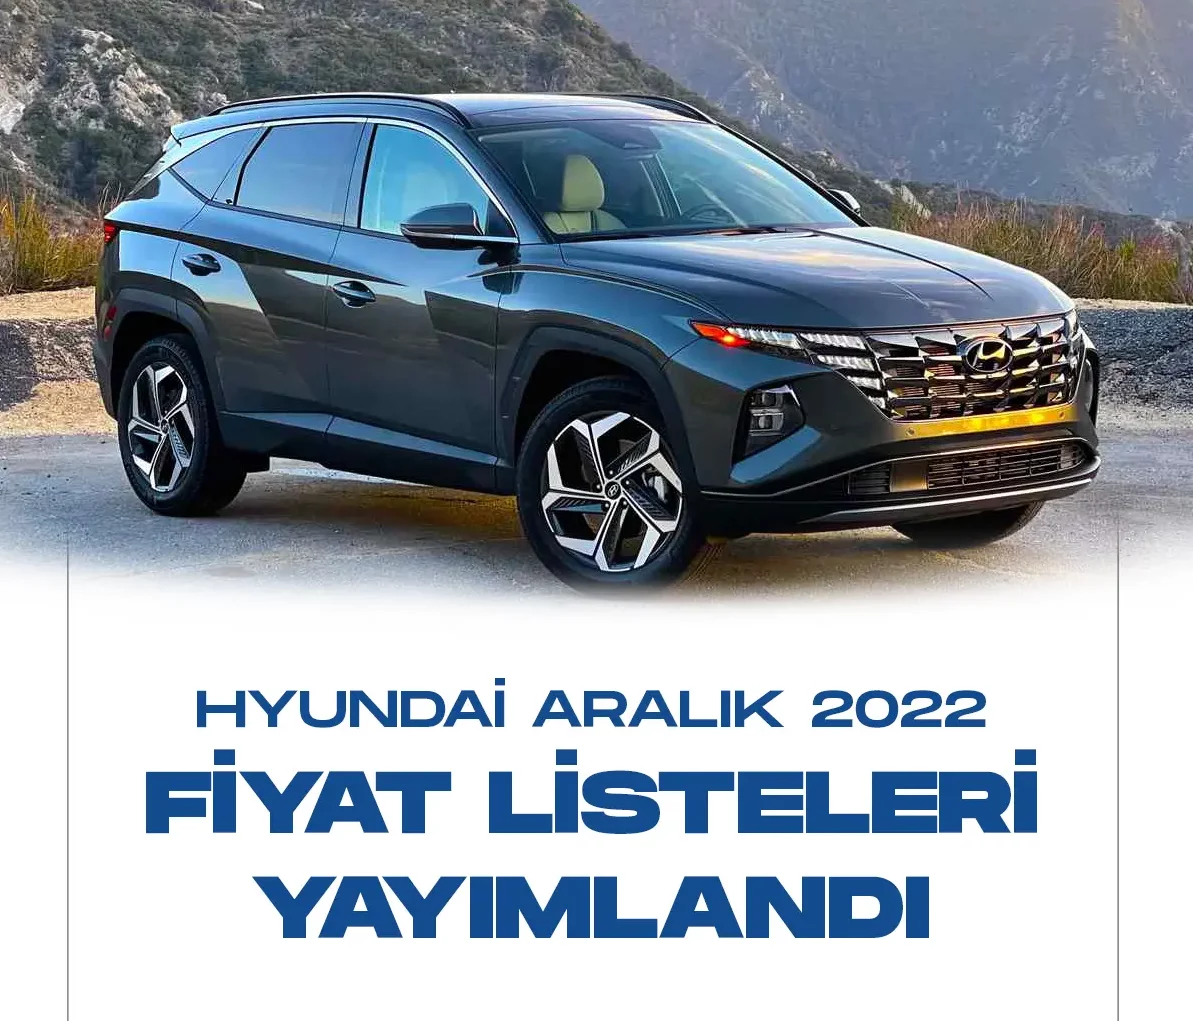 Hyundai aralık 2022 fiyat listesi yayımlandı. Hyundai otomobil modelleri için yeni satış fiyatları netleşti.